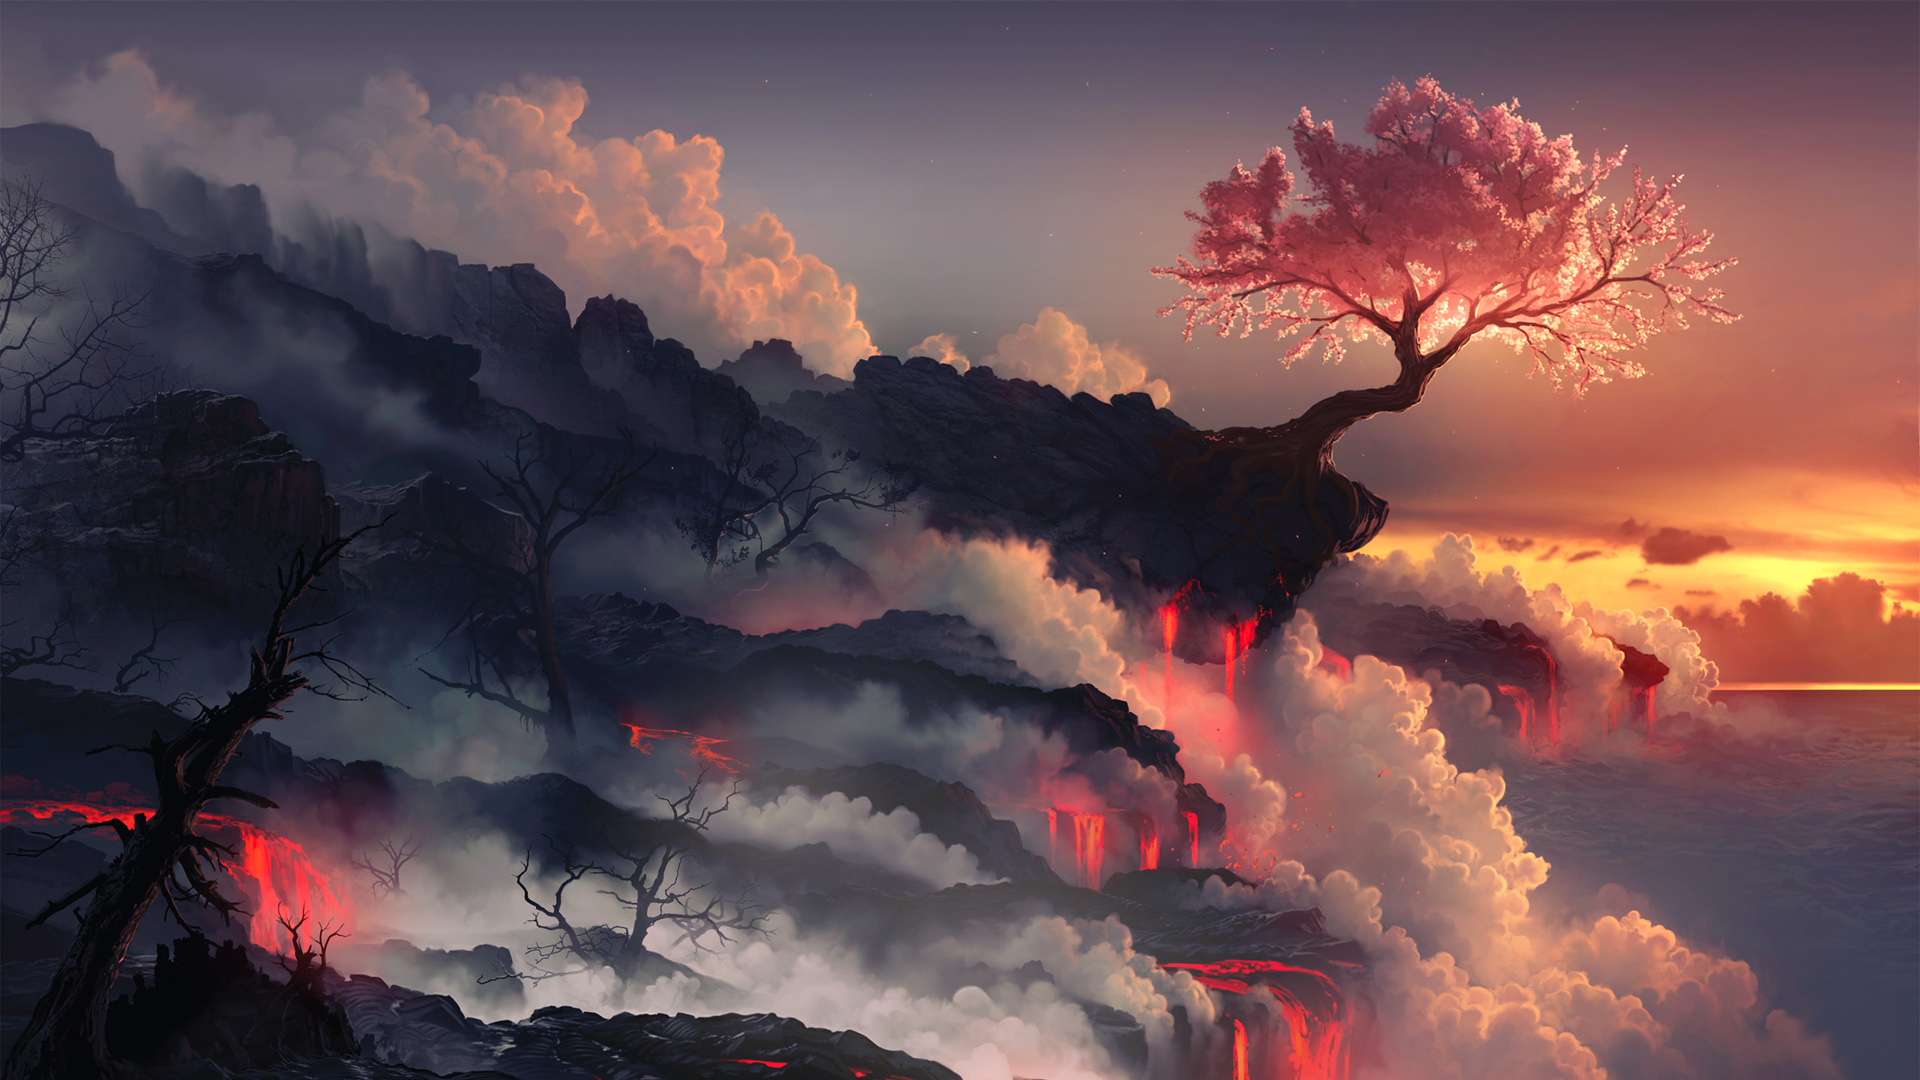 火山岩浆悬崖边上顽强生存的树和枯树唯美插画壁纸图片